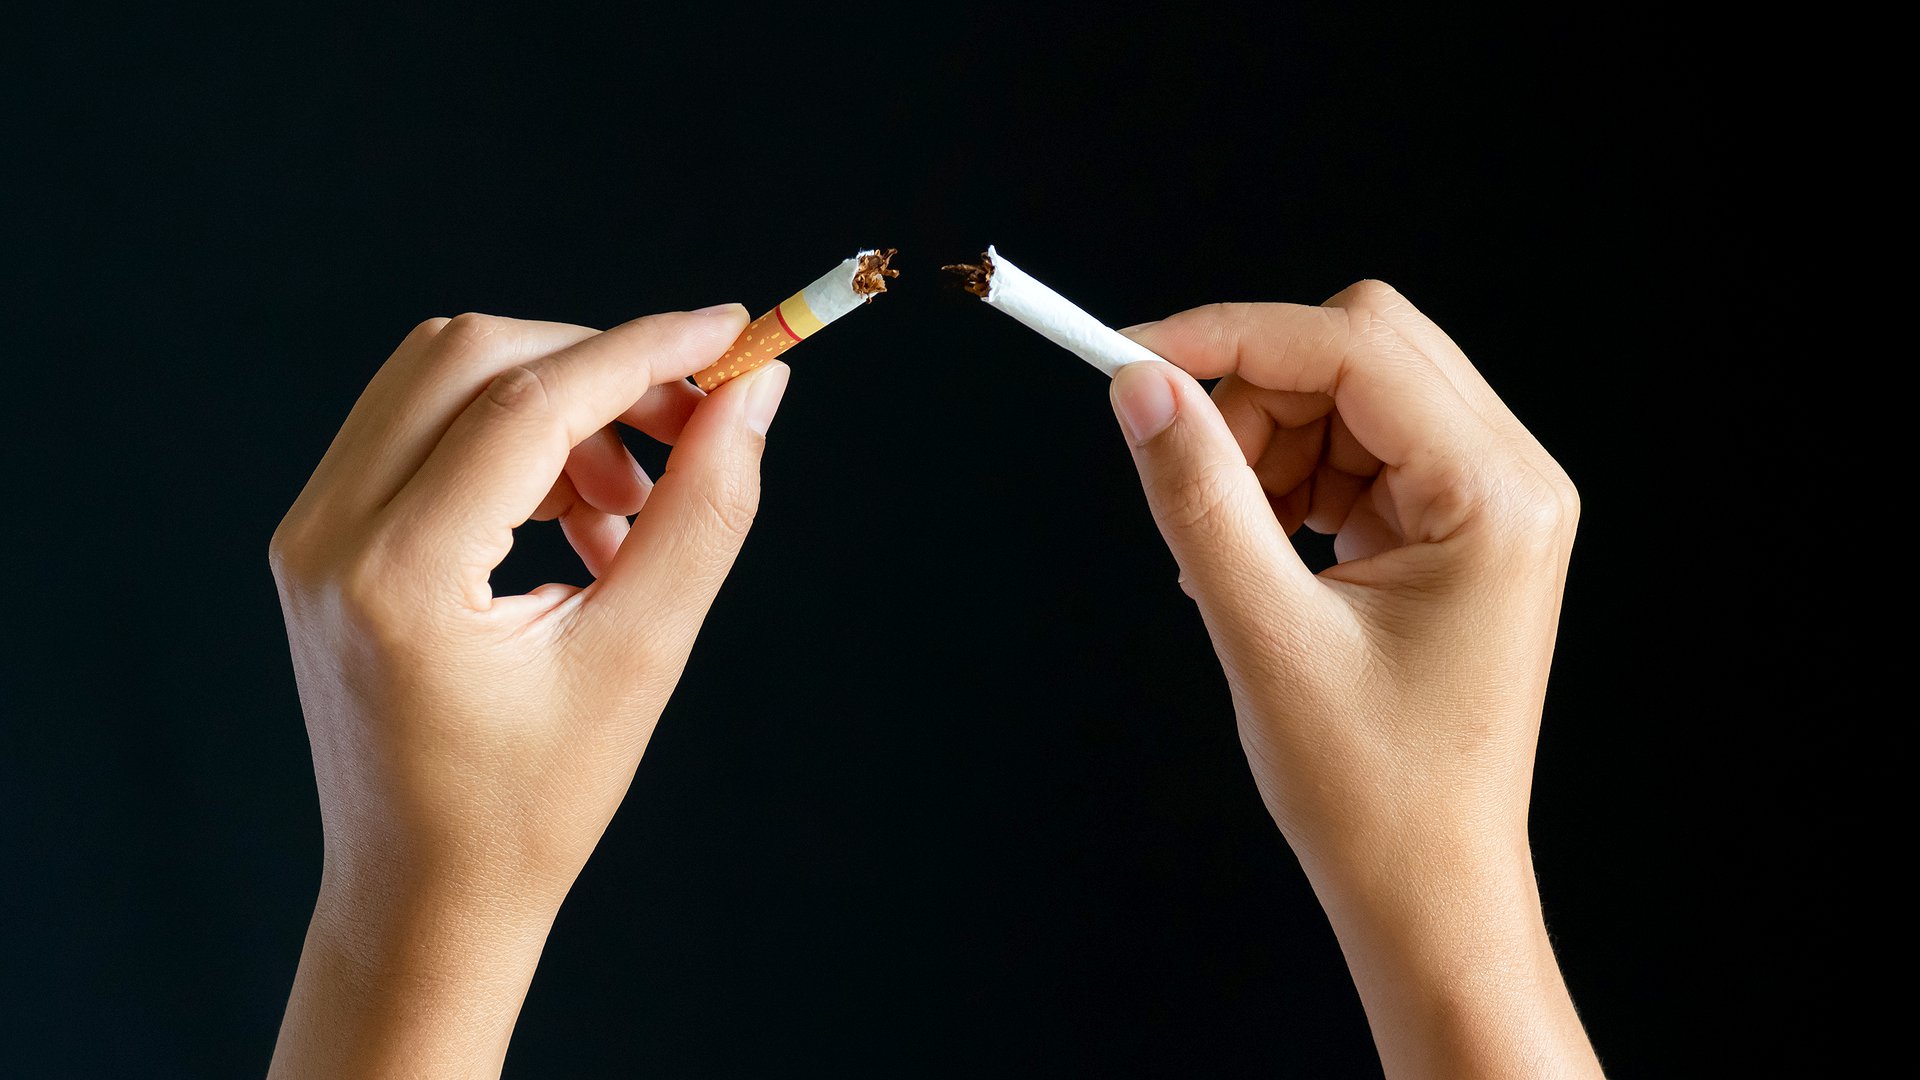 Es gibt verschiedene Gründe warum wir rauchen. Um das Rauchen zu reduzieren oder damit aufzuhören gibt es verschiedene Tipps und Ansätze.